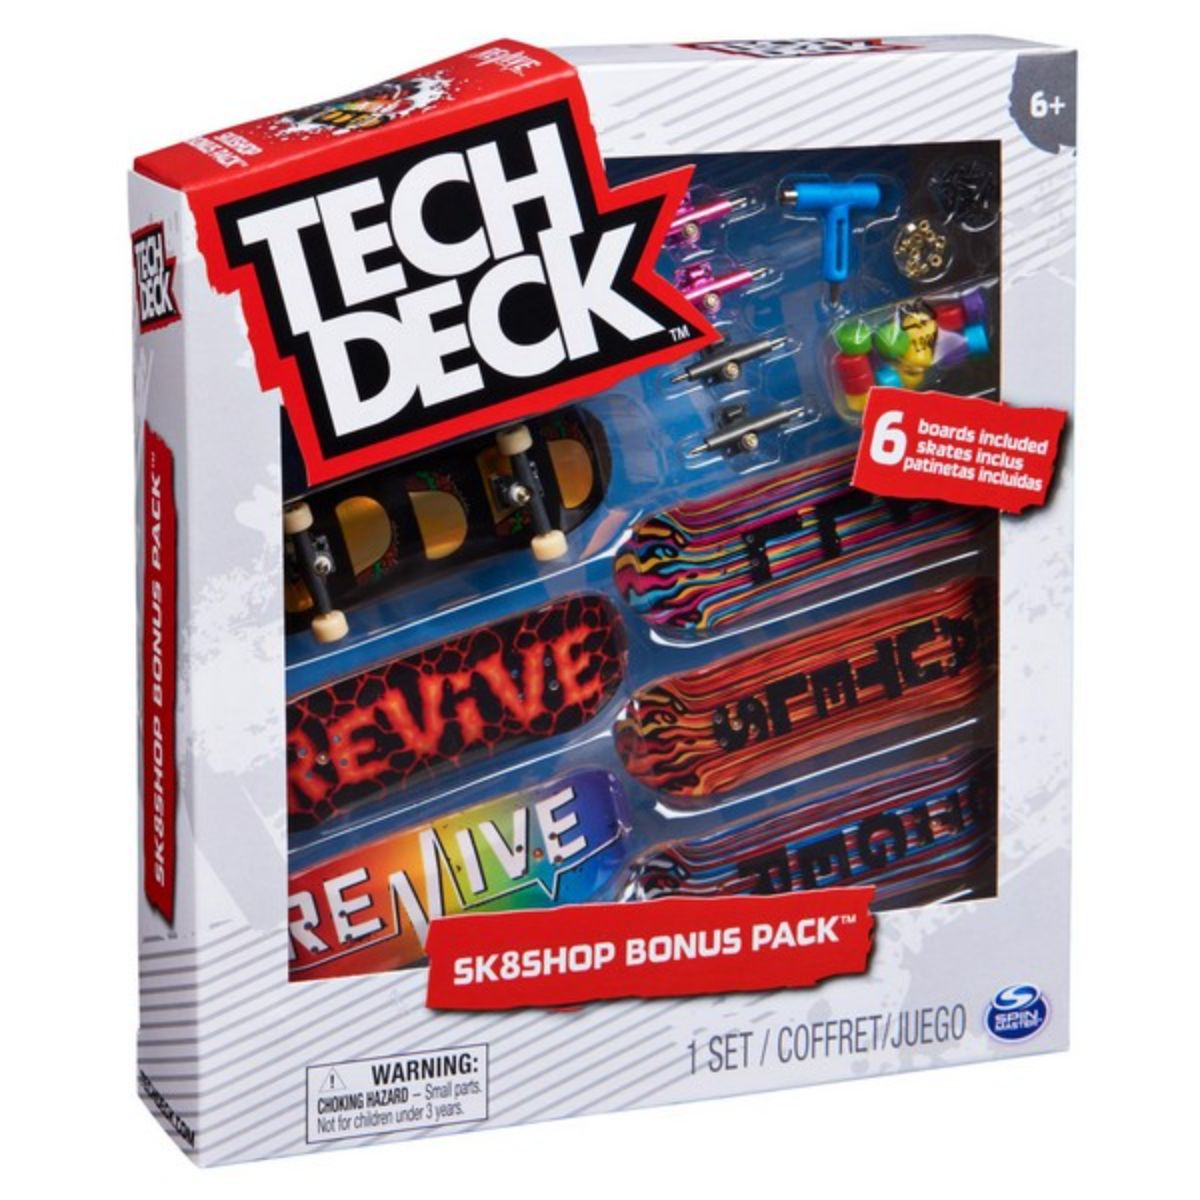 Set 6 mini placi skateboard, Tech Deck, Bonus Pack 20136699